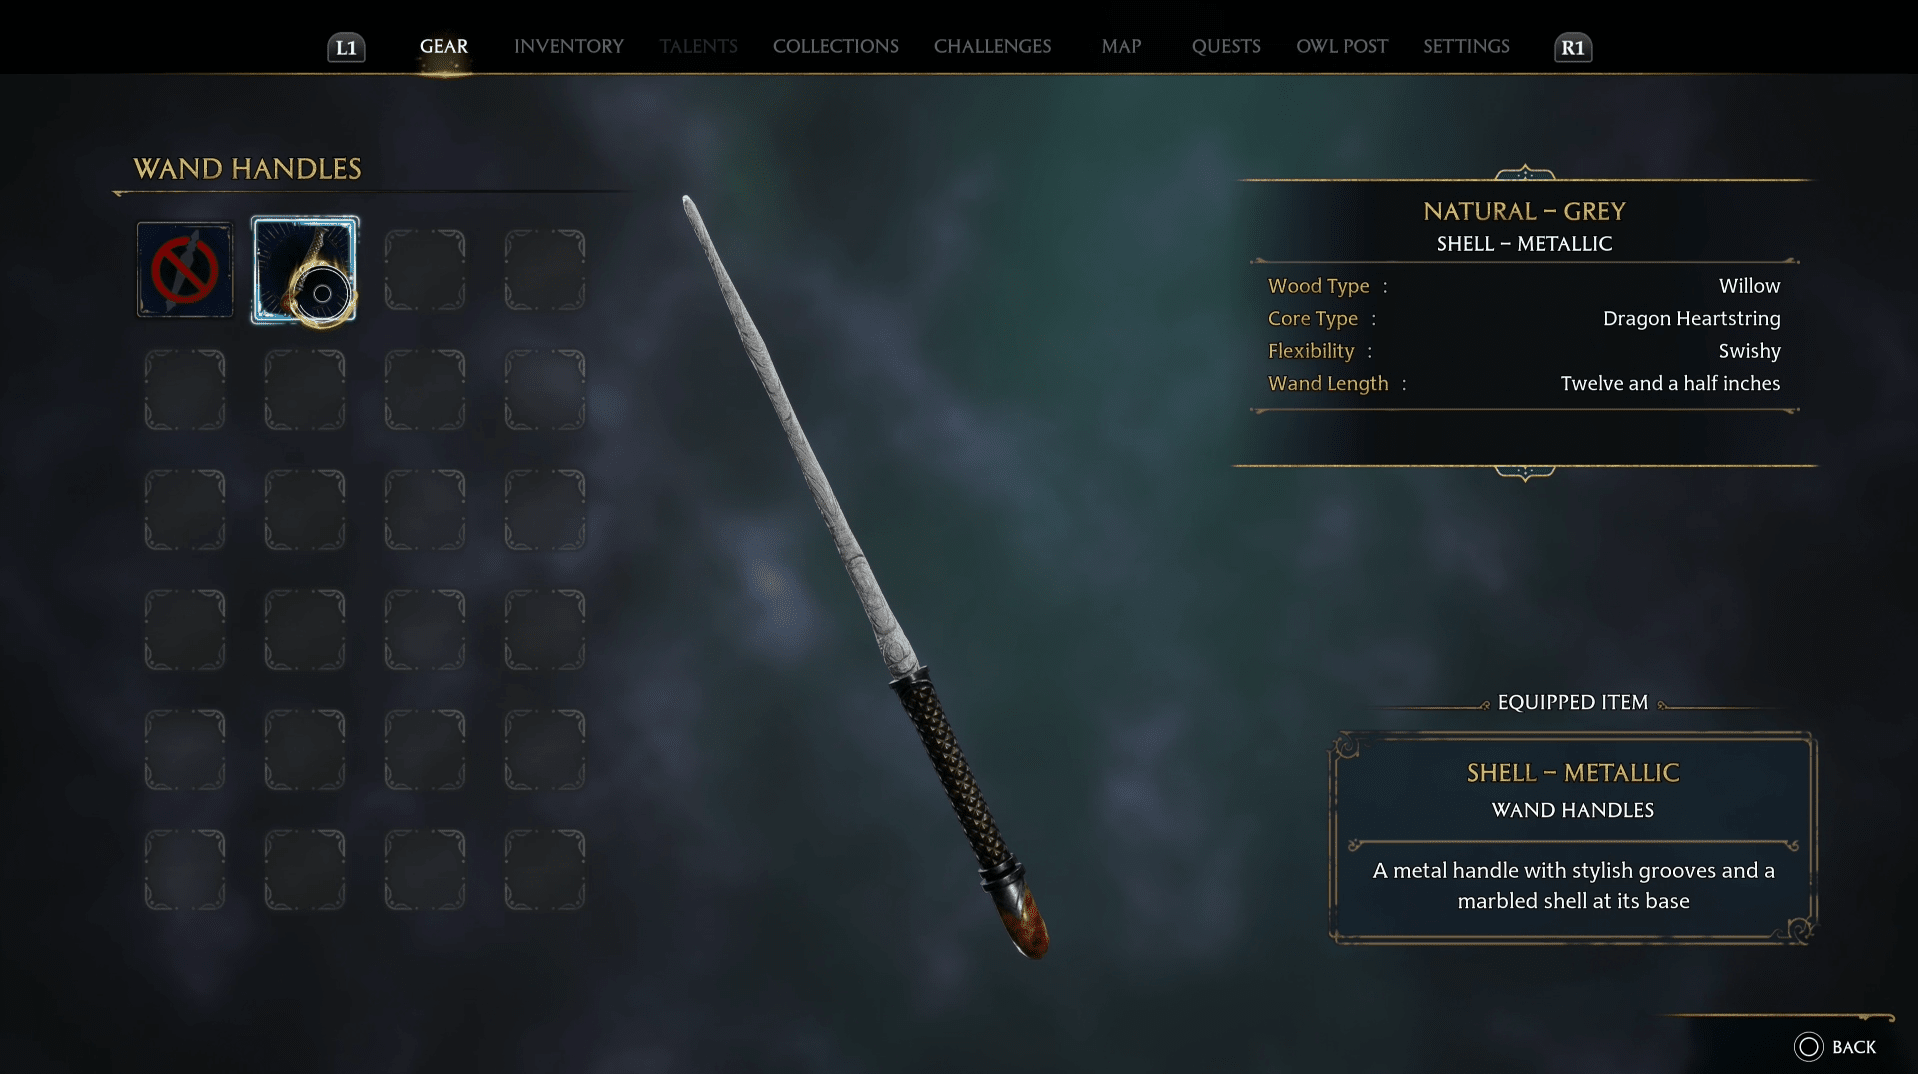 Hogwarts Legacy wand customisation